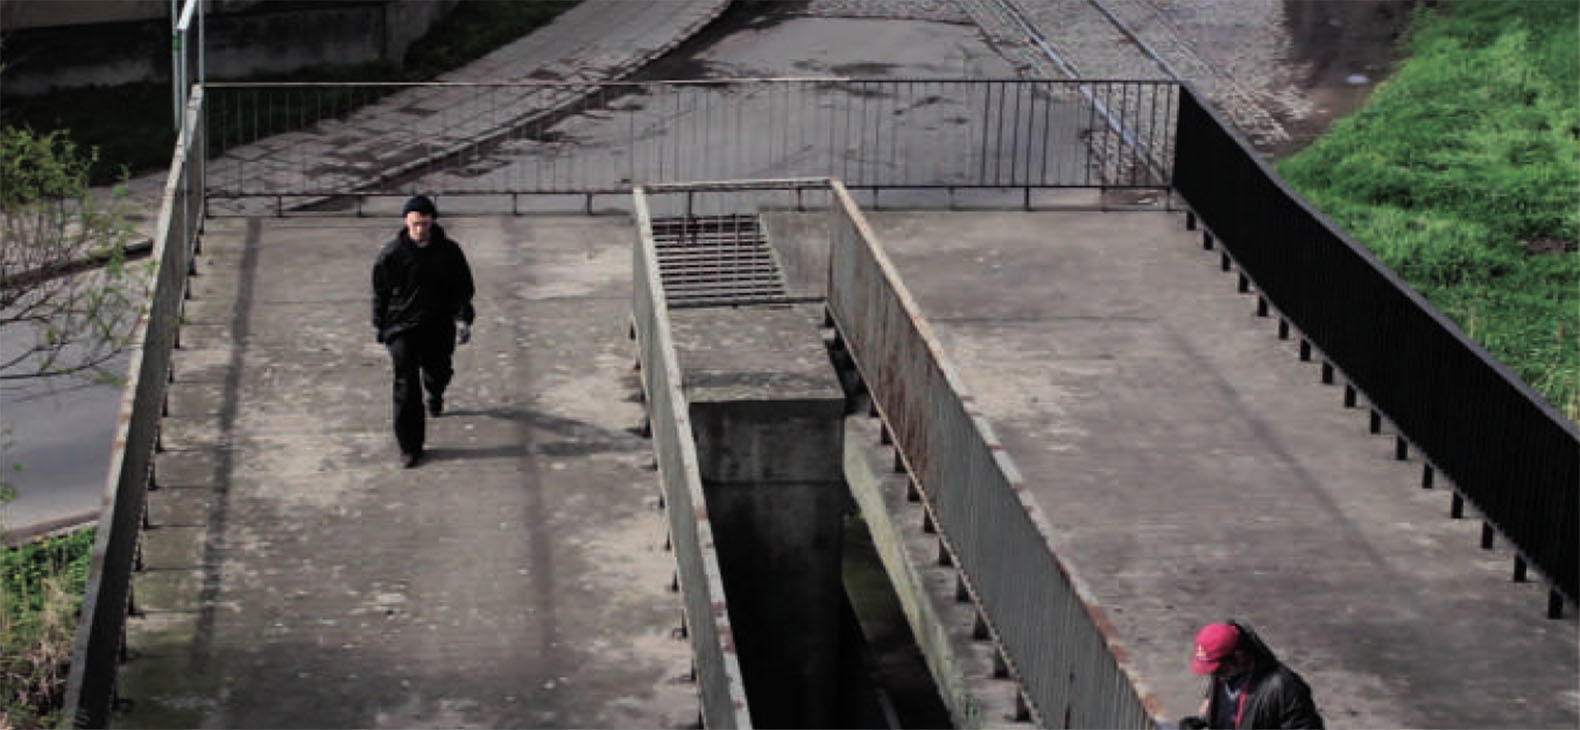 Artur Rozen: Black Flag, Video, 2014